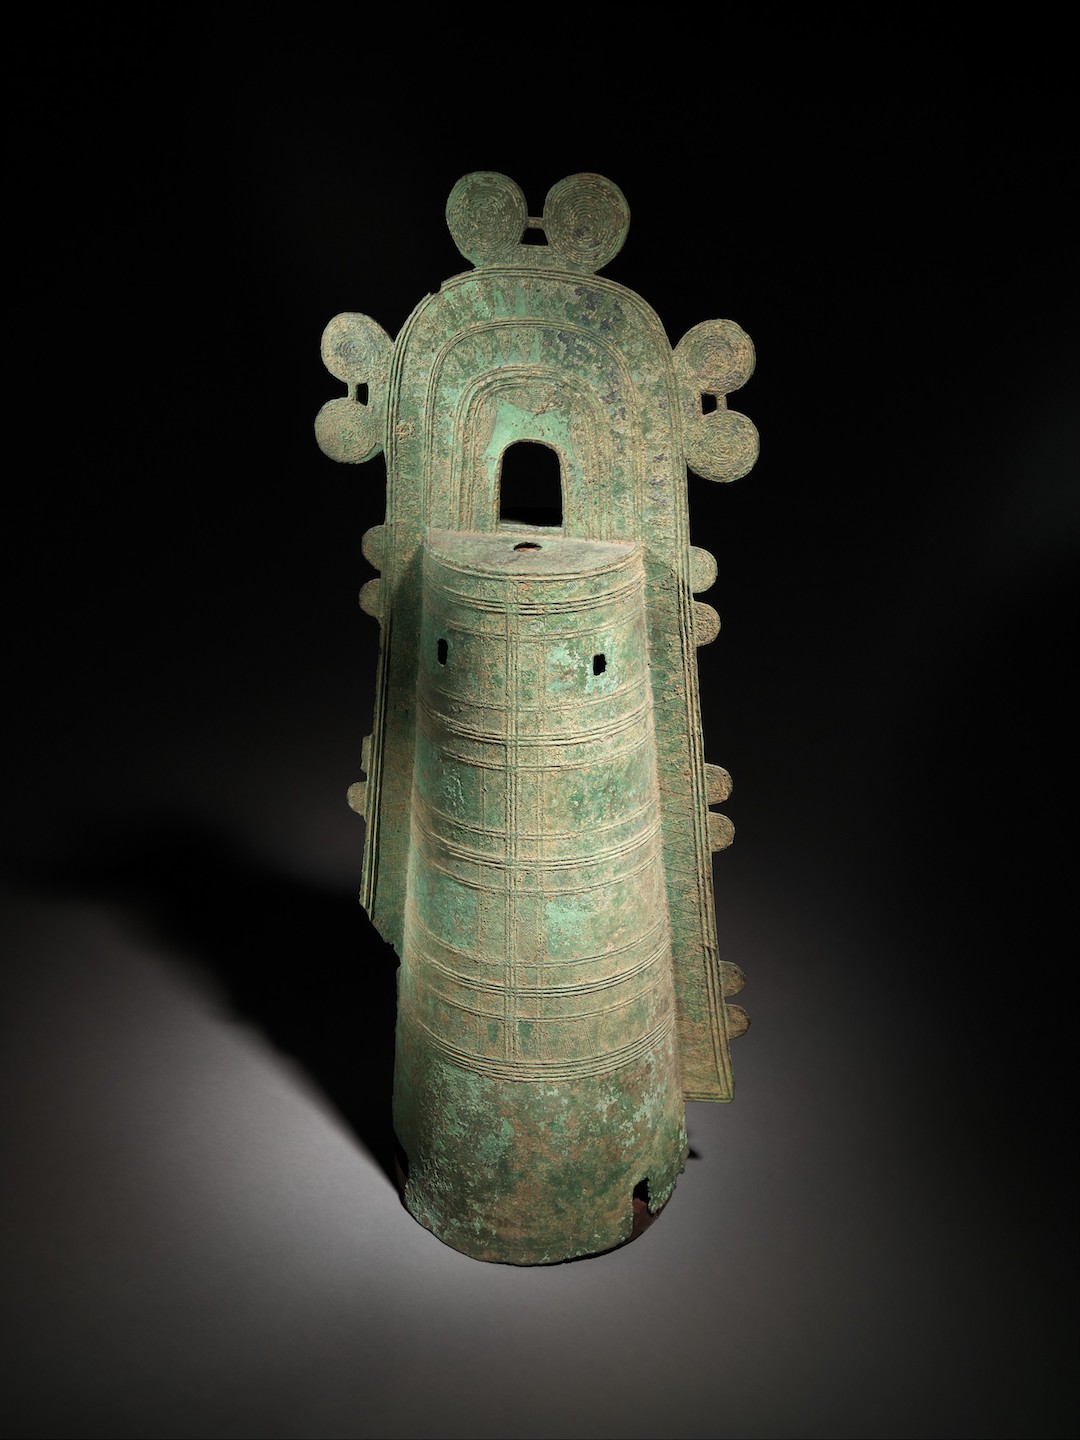 schmales, glockenförmiges Kunstwerk aus Bronze mit schnurförmigen Verzierungen im Metall